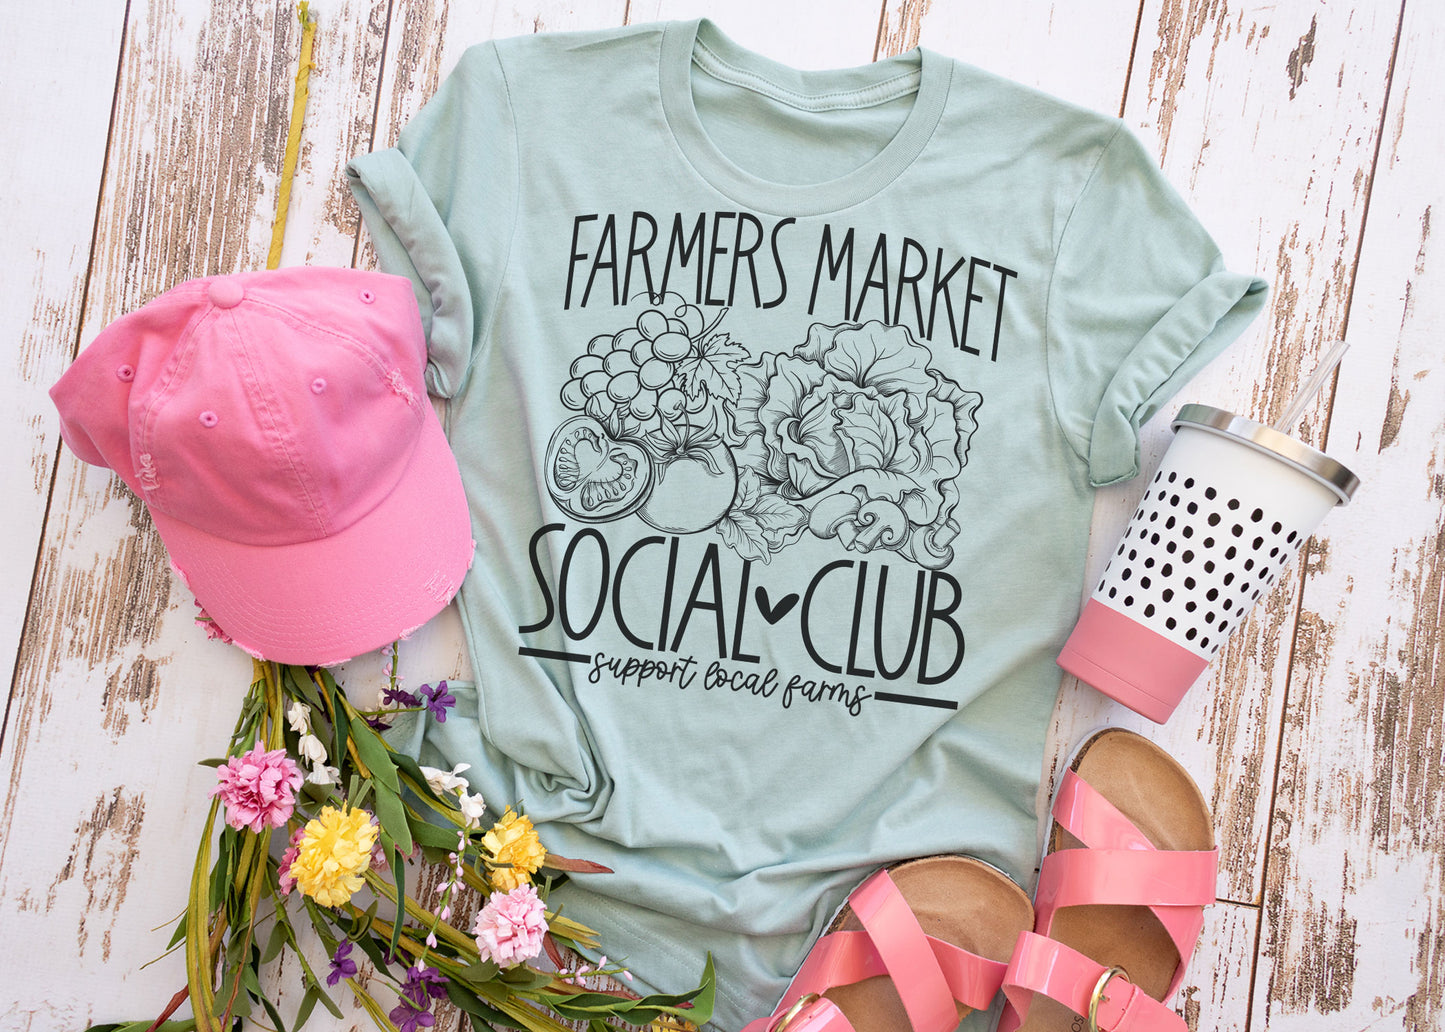 Farmers market social club